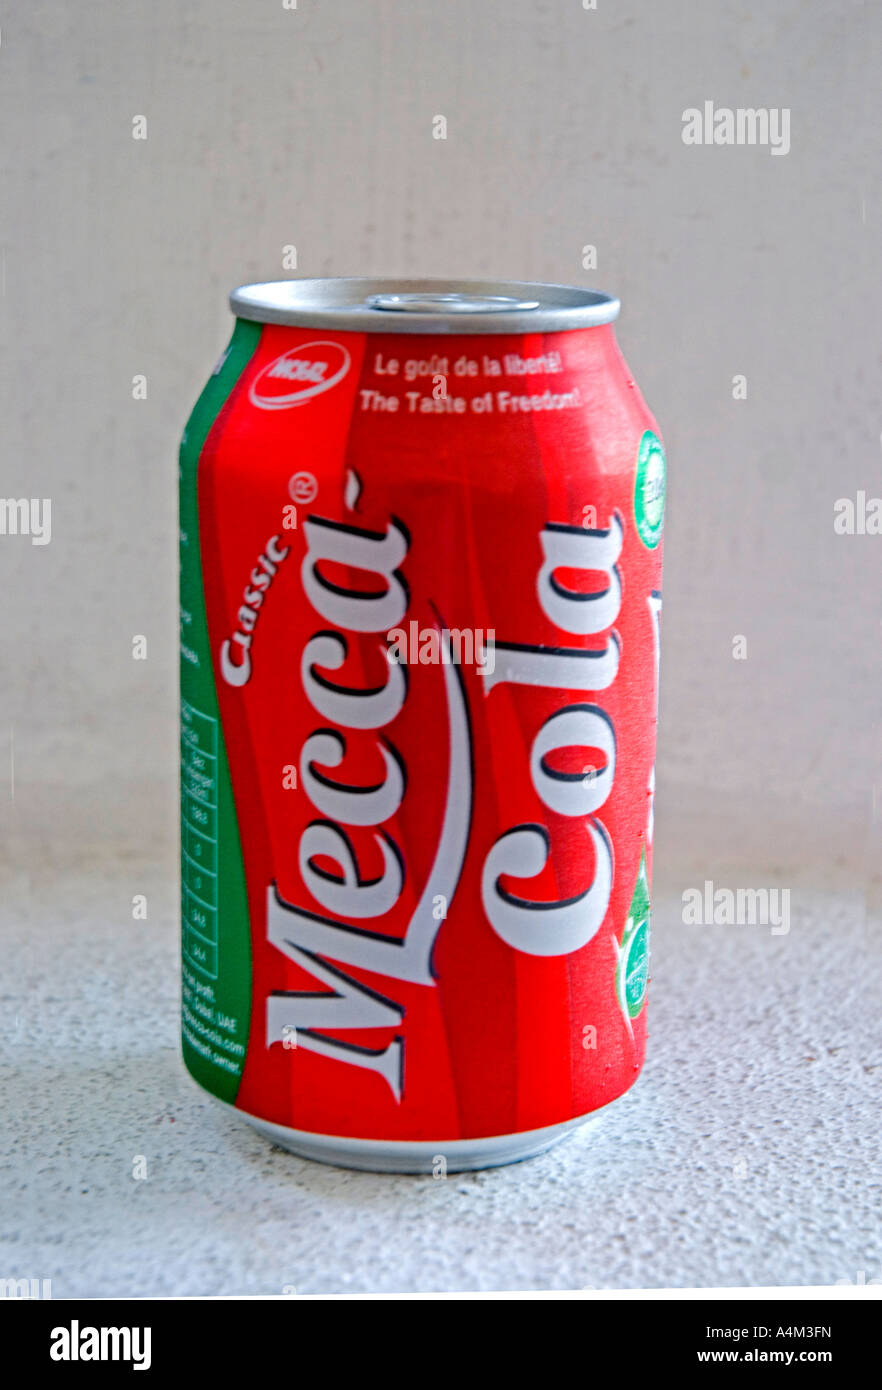 Une canette de Coca Cola classique copie islamique non autorisée de Coca Cola traditionnel Banque D'Images